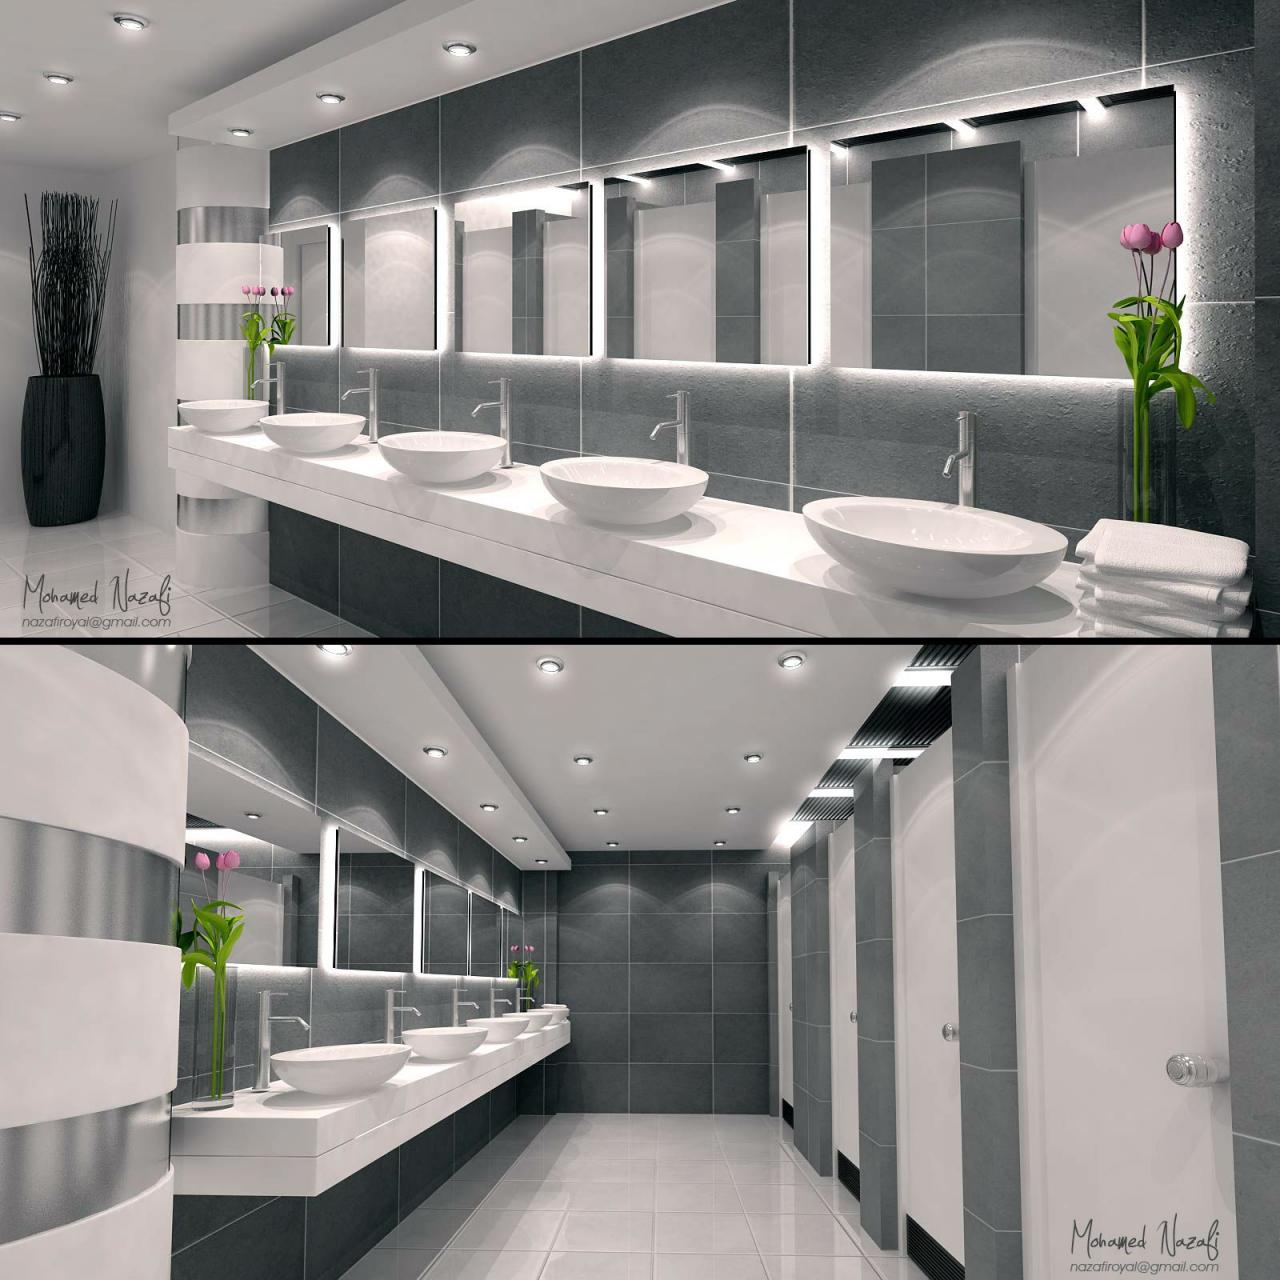 portfolio by Nazafi Mohamed Washroom design, Restroom design